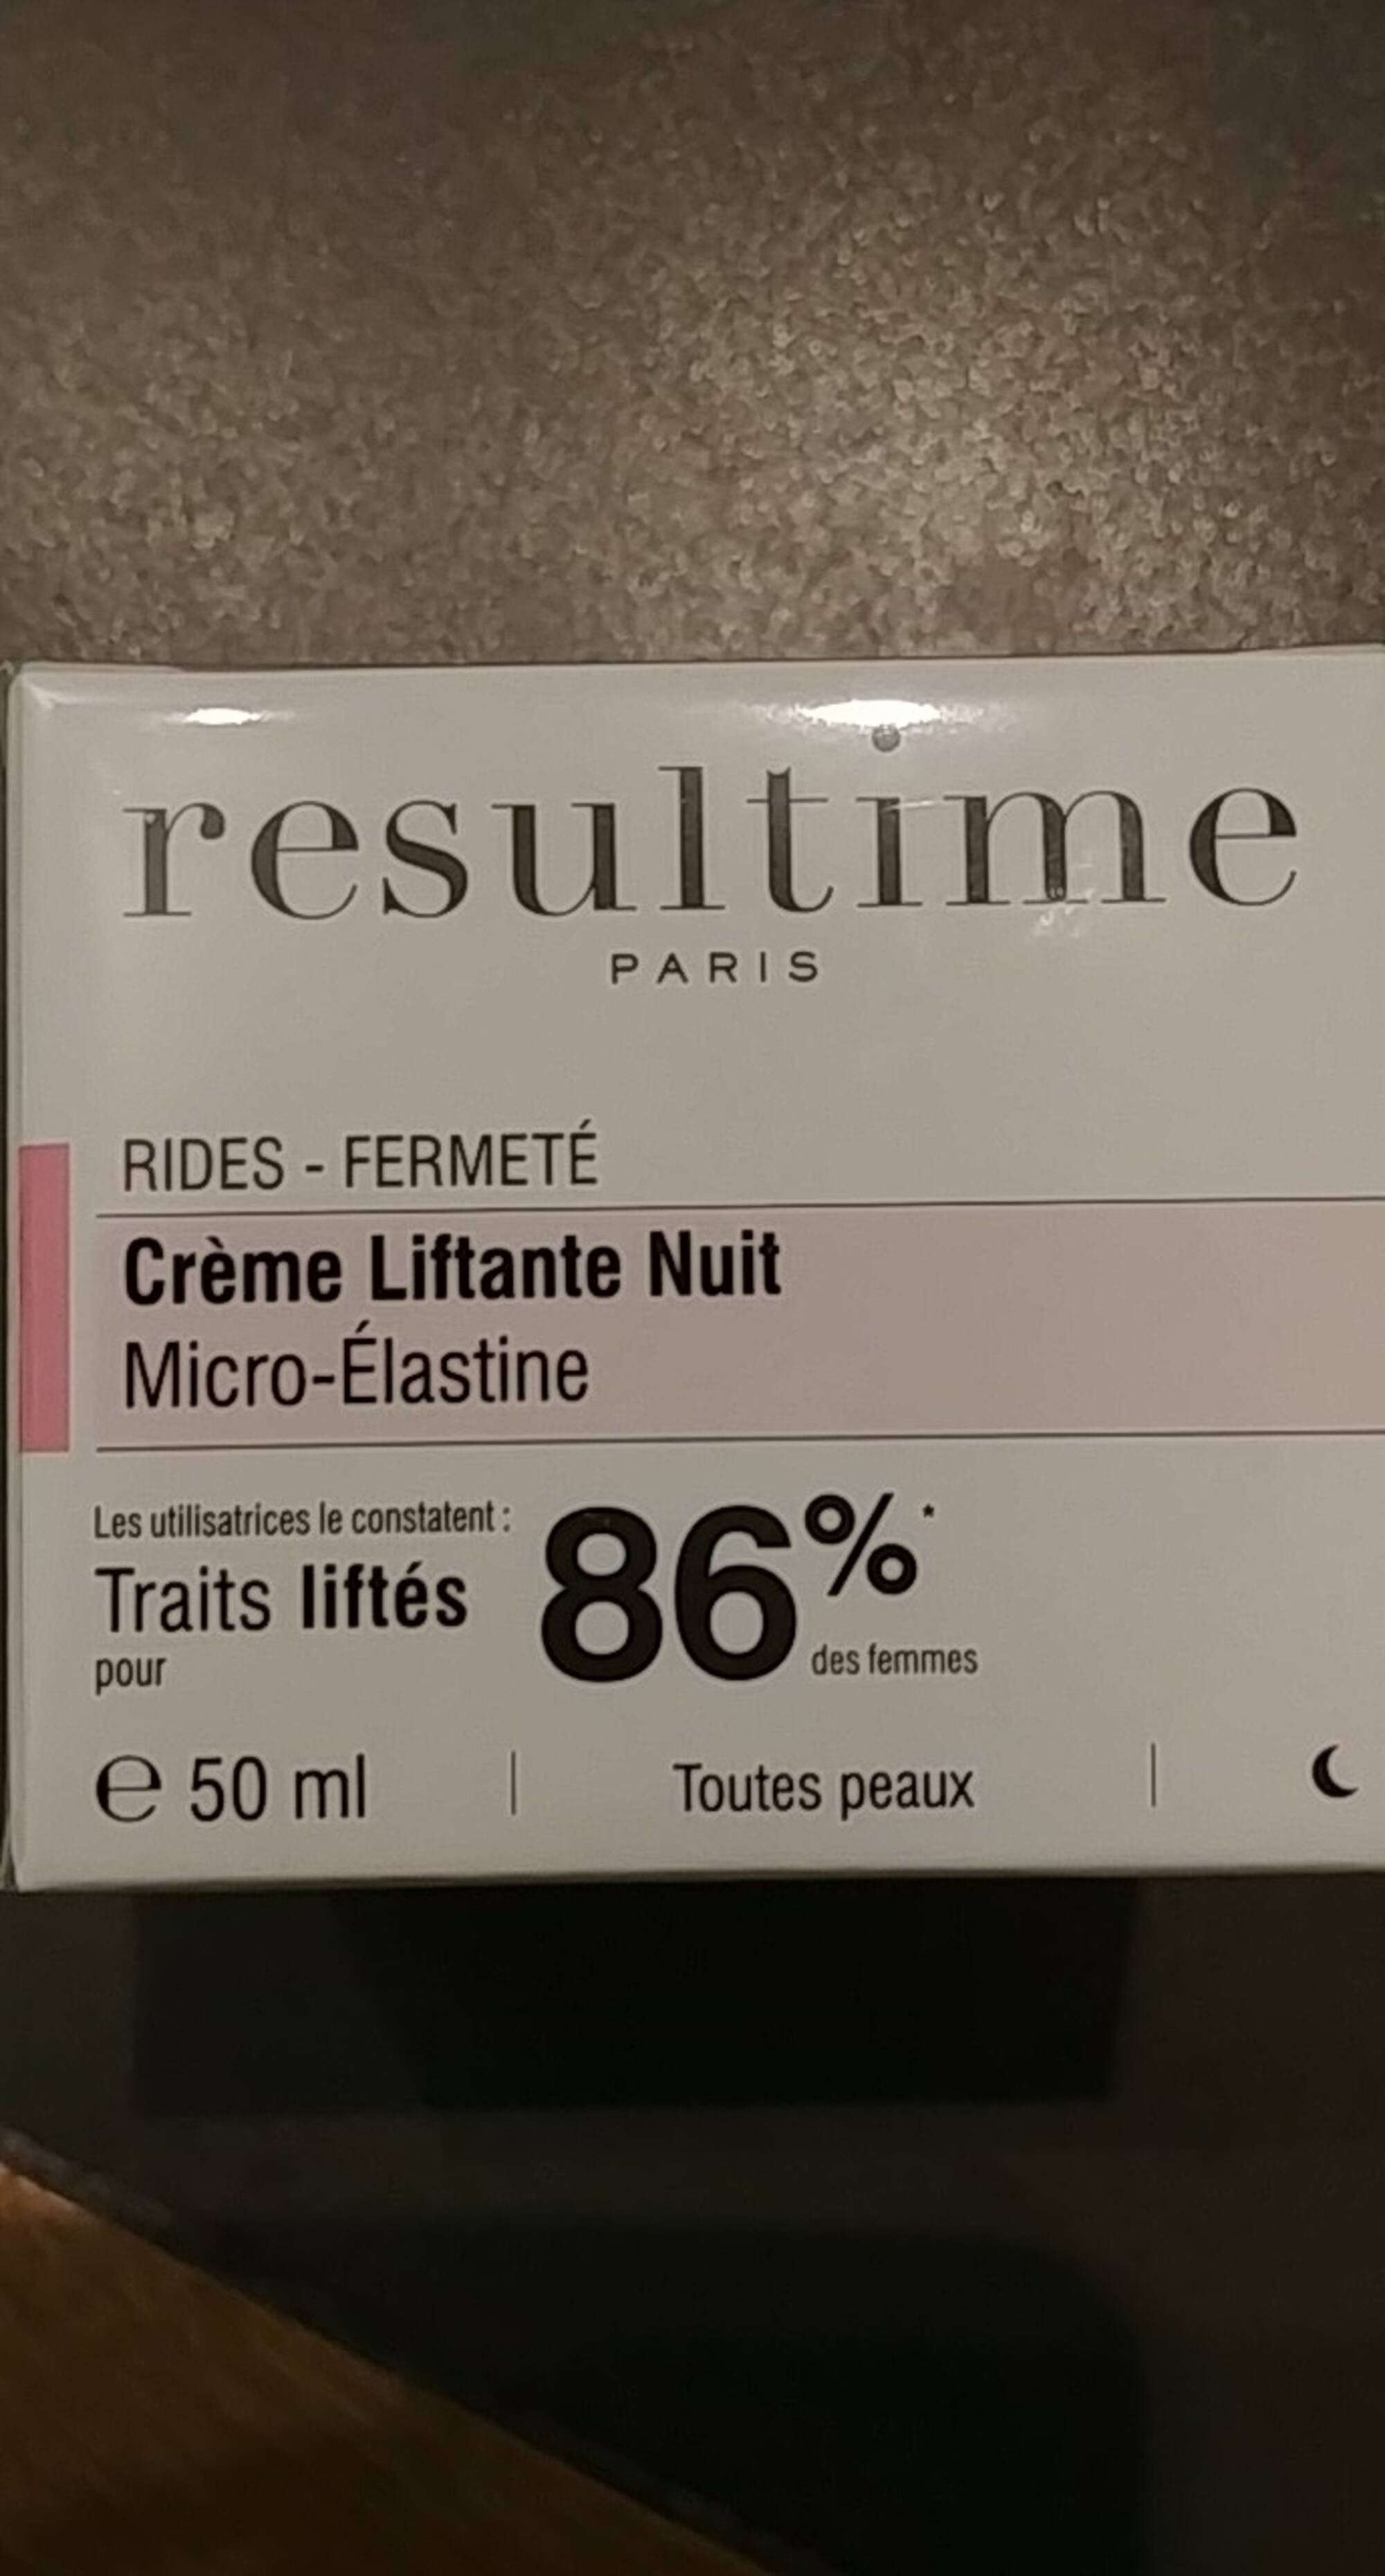 RESULTIME - Rides fermeté - Crème liftante nuit micro-élastine